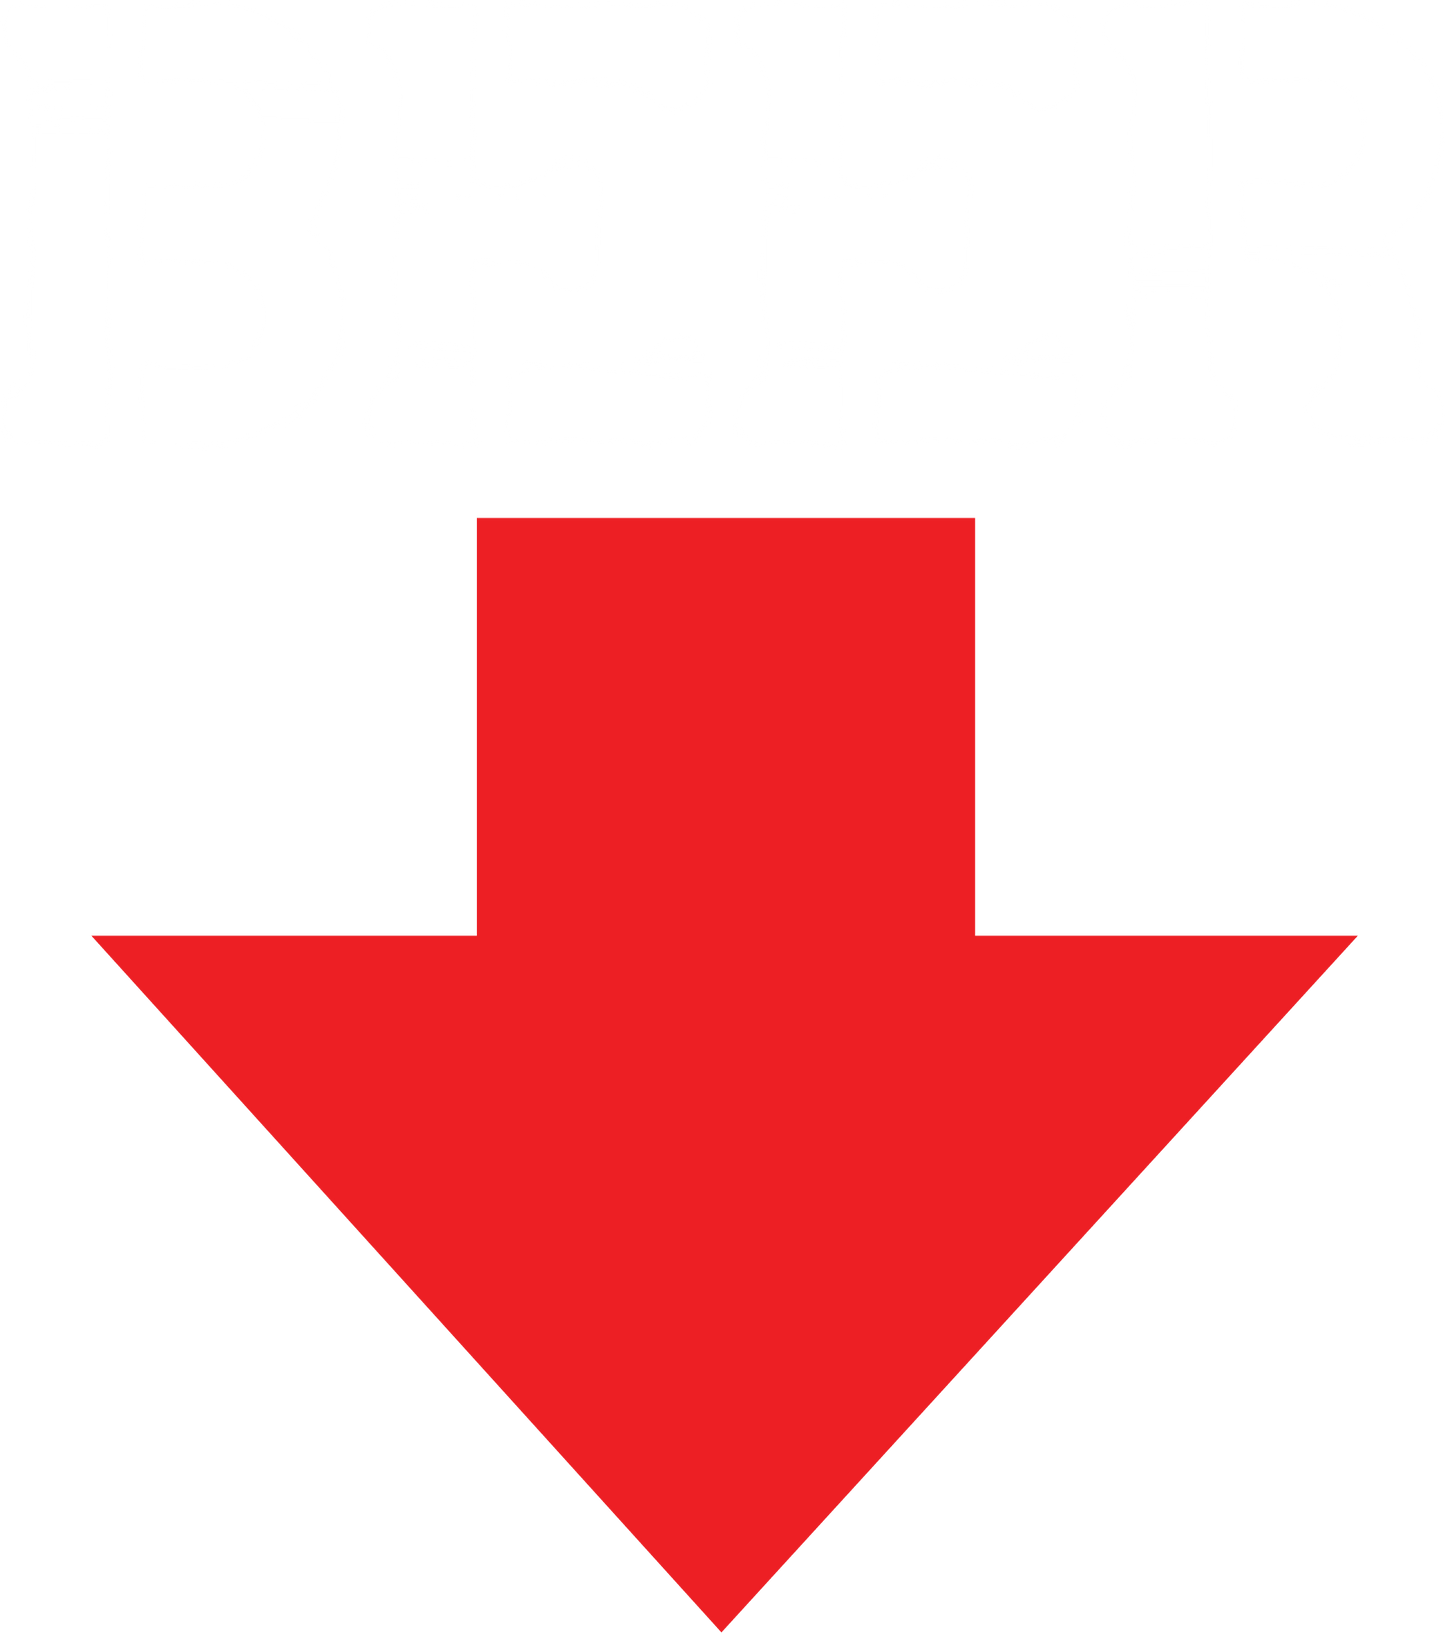 Beer Bell Shirt